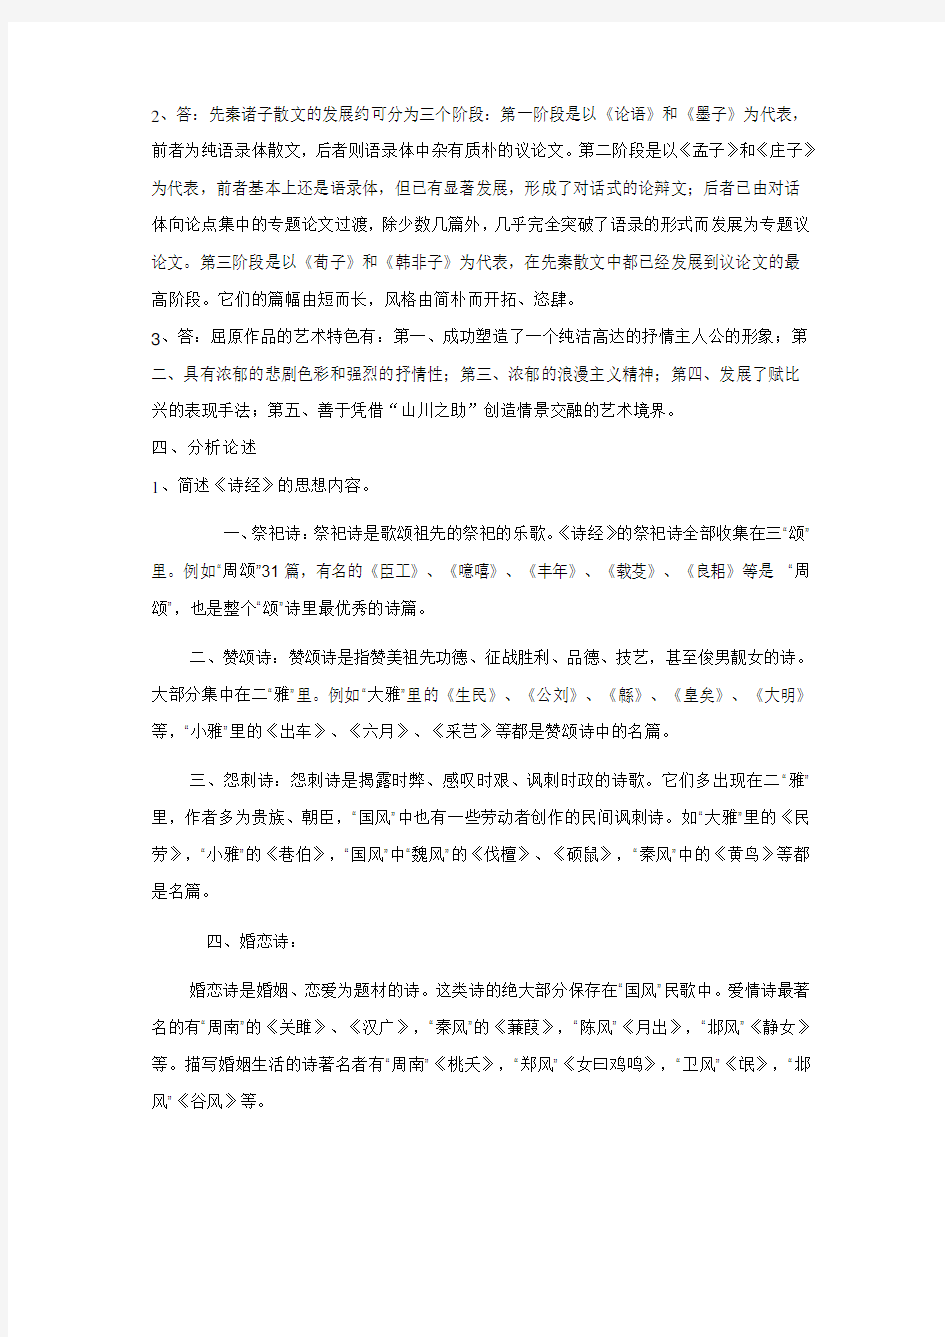 中国古代文学(B)(1)形成性考核册之作业1-4答案